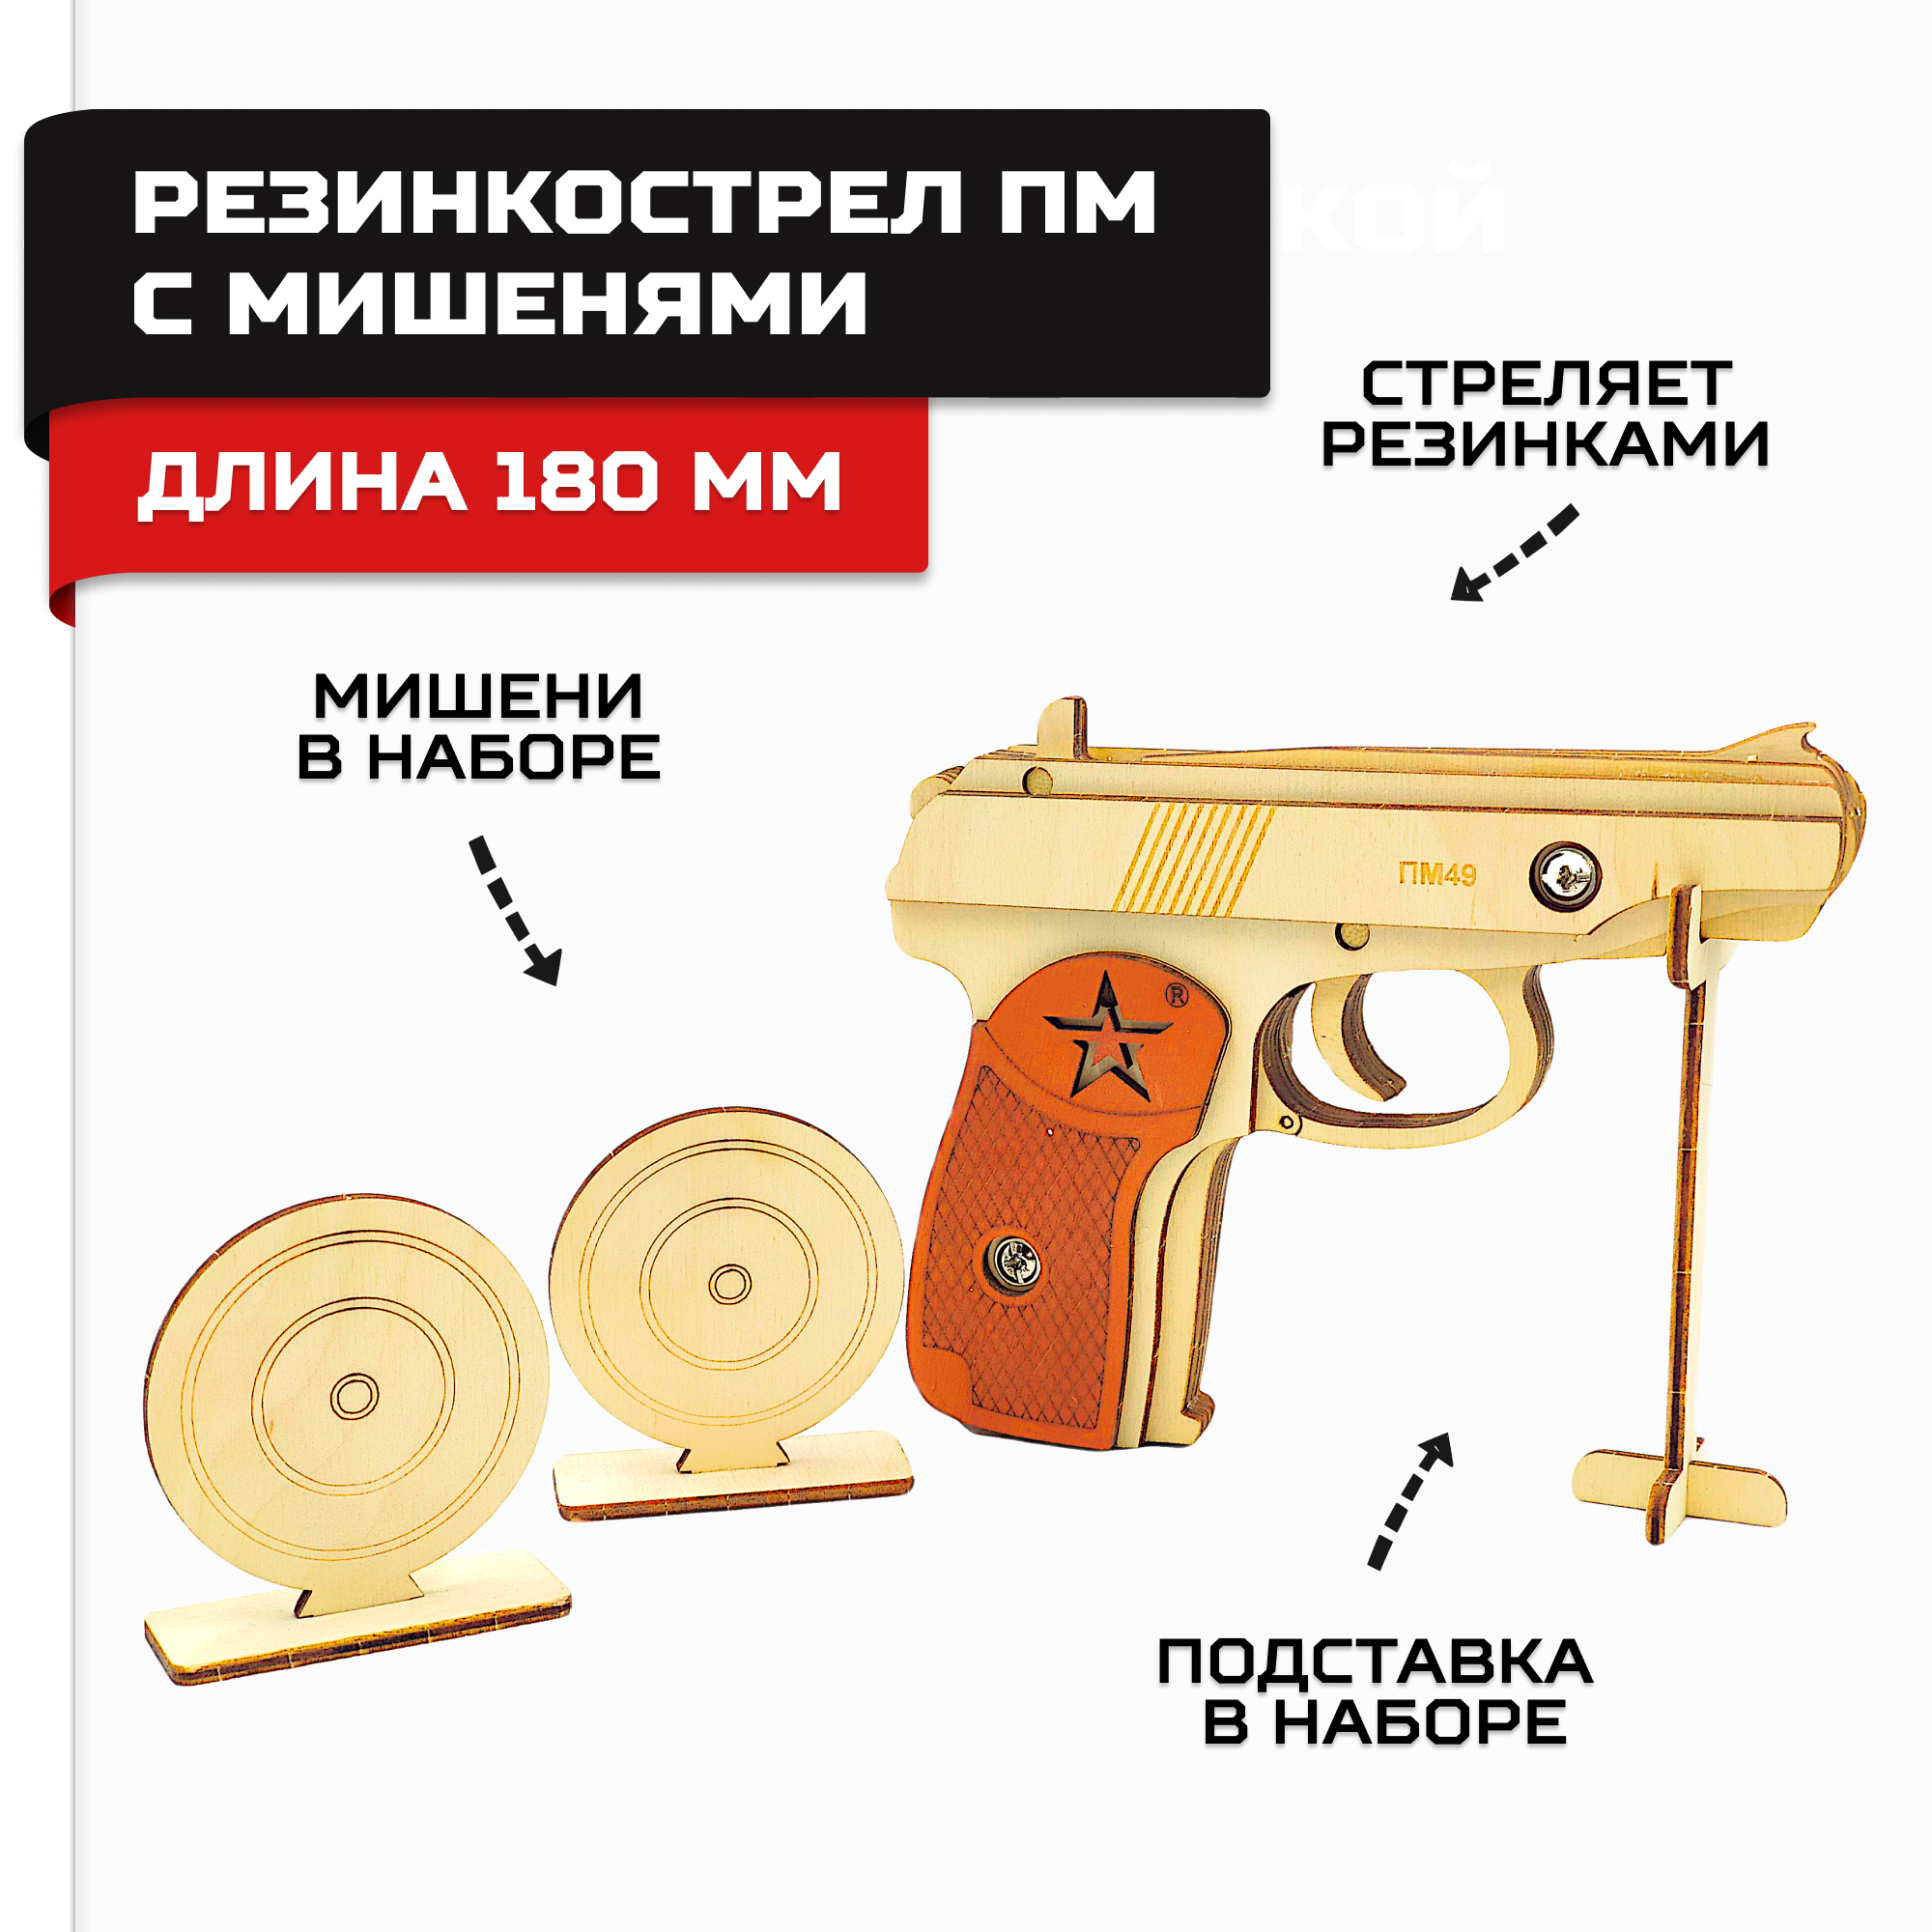 Пистолет-резинкострел Армия России в сборе ПМ с мишенями - фото 1